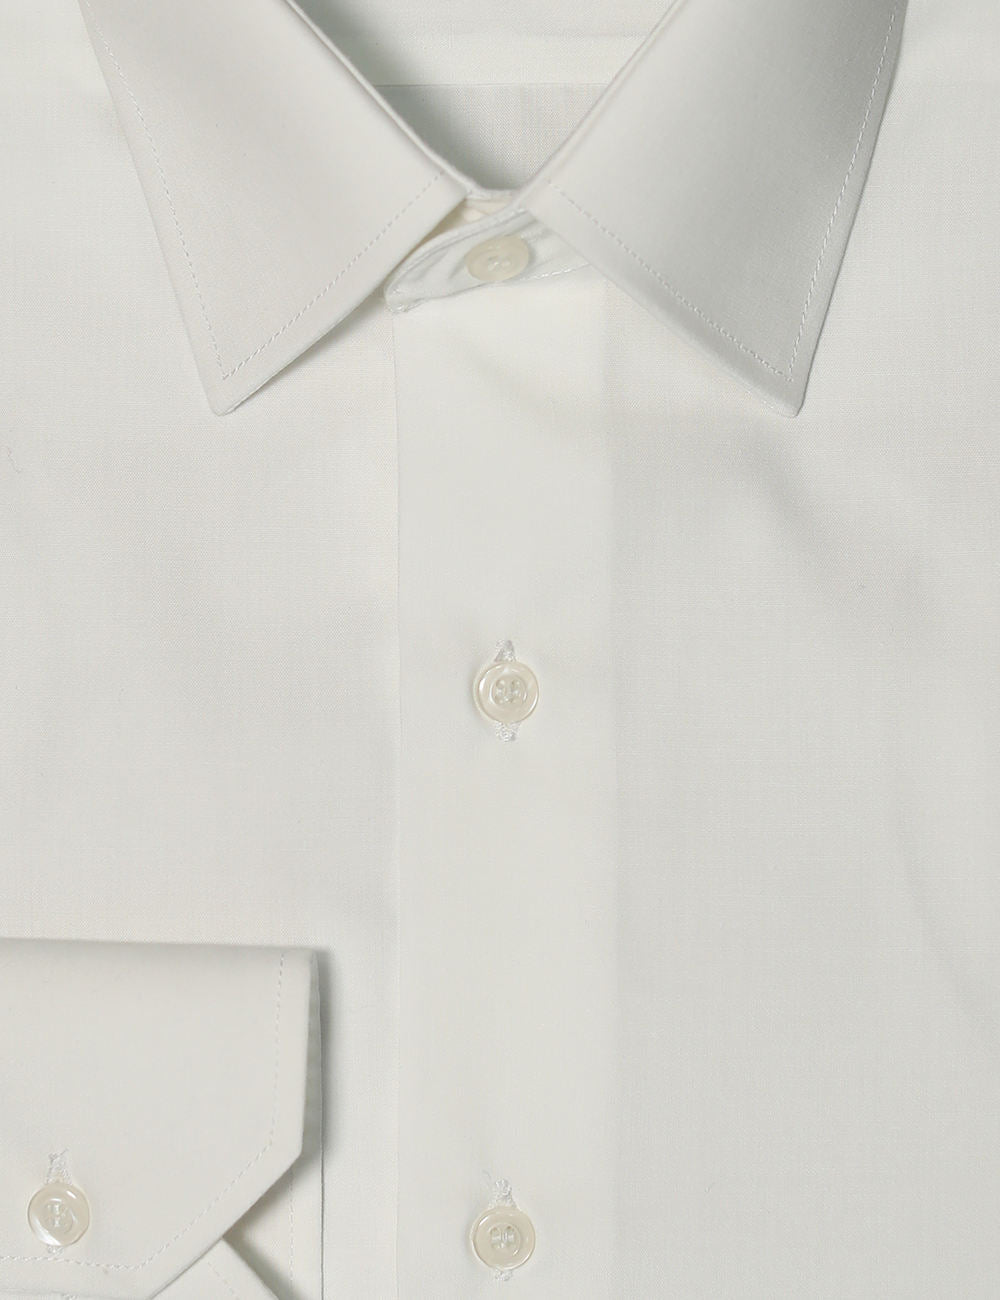 White Business shirt for men